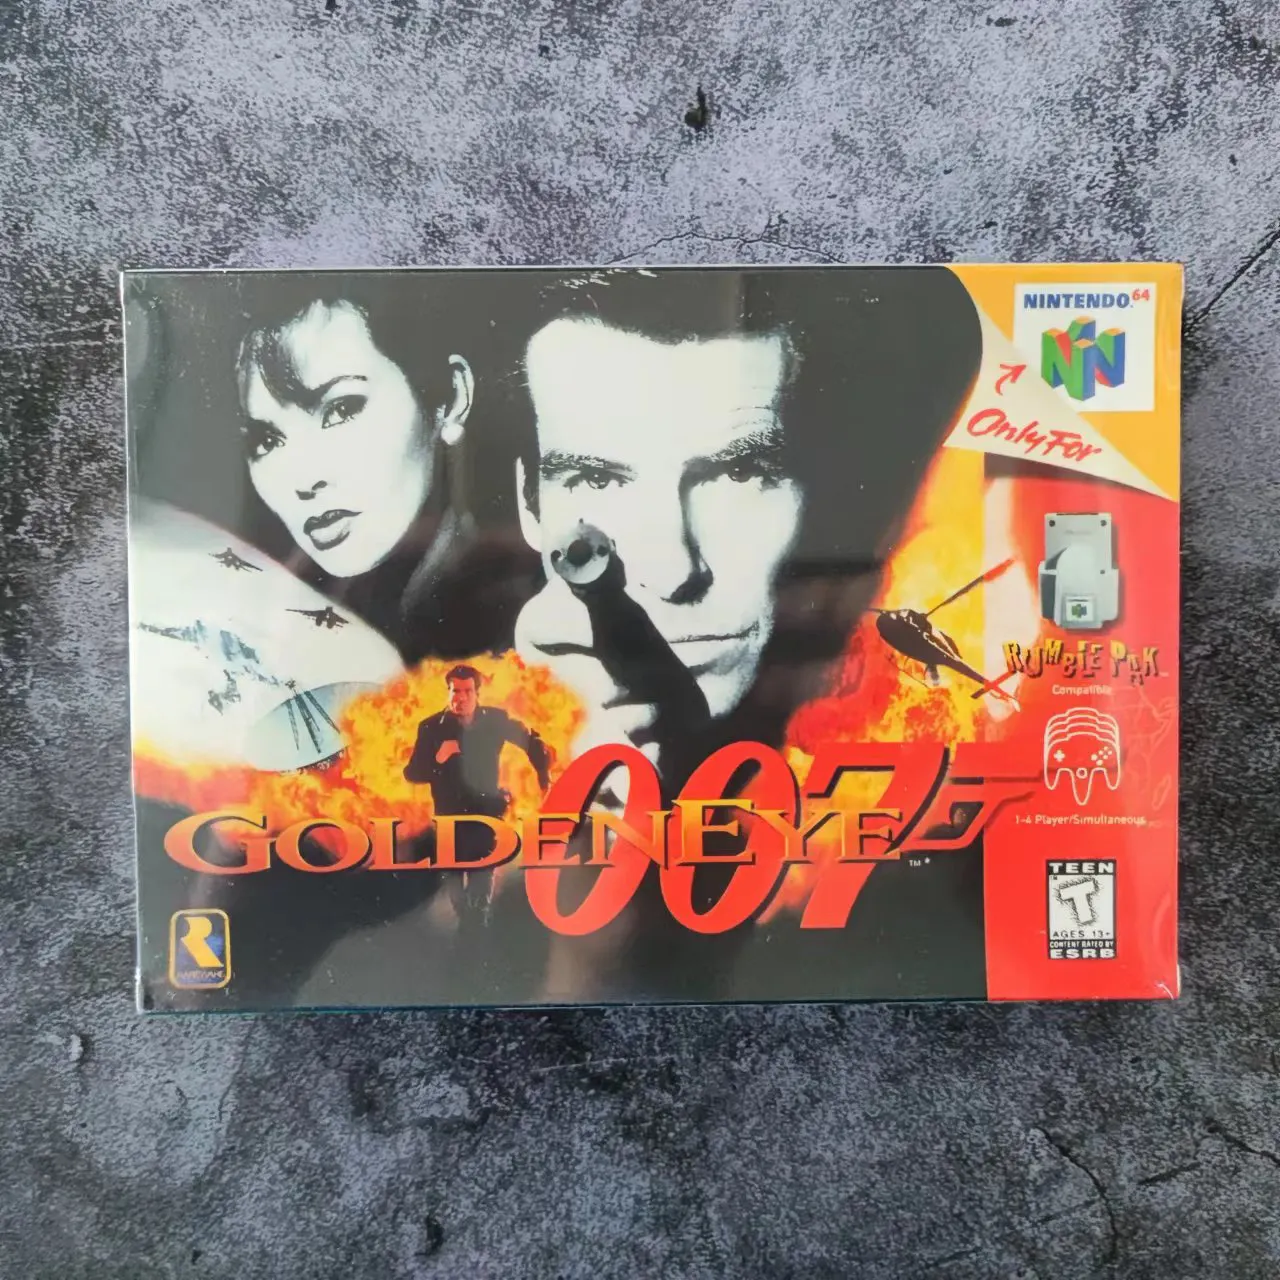 GOLDENEYE 007 game cartridge USA Version NTSC Format For N64